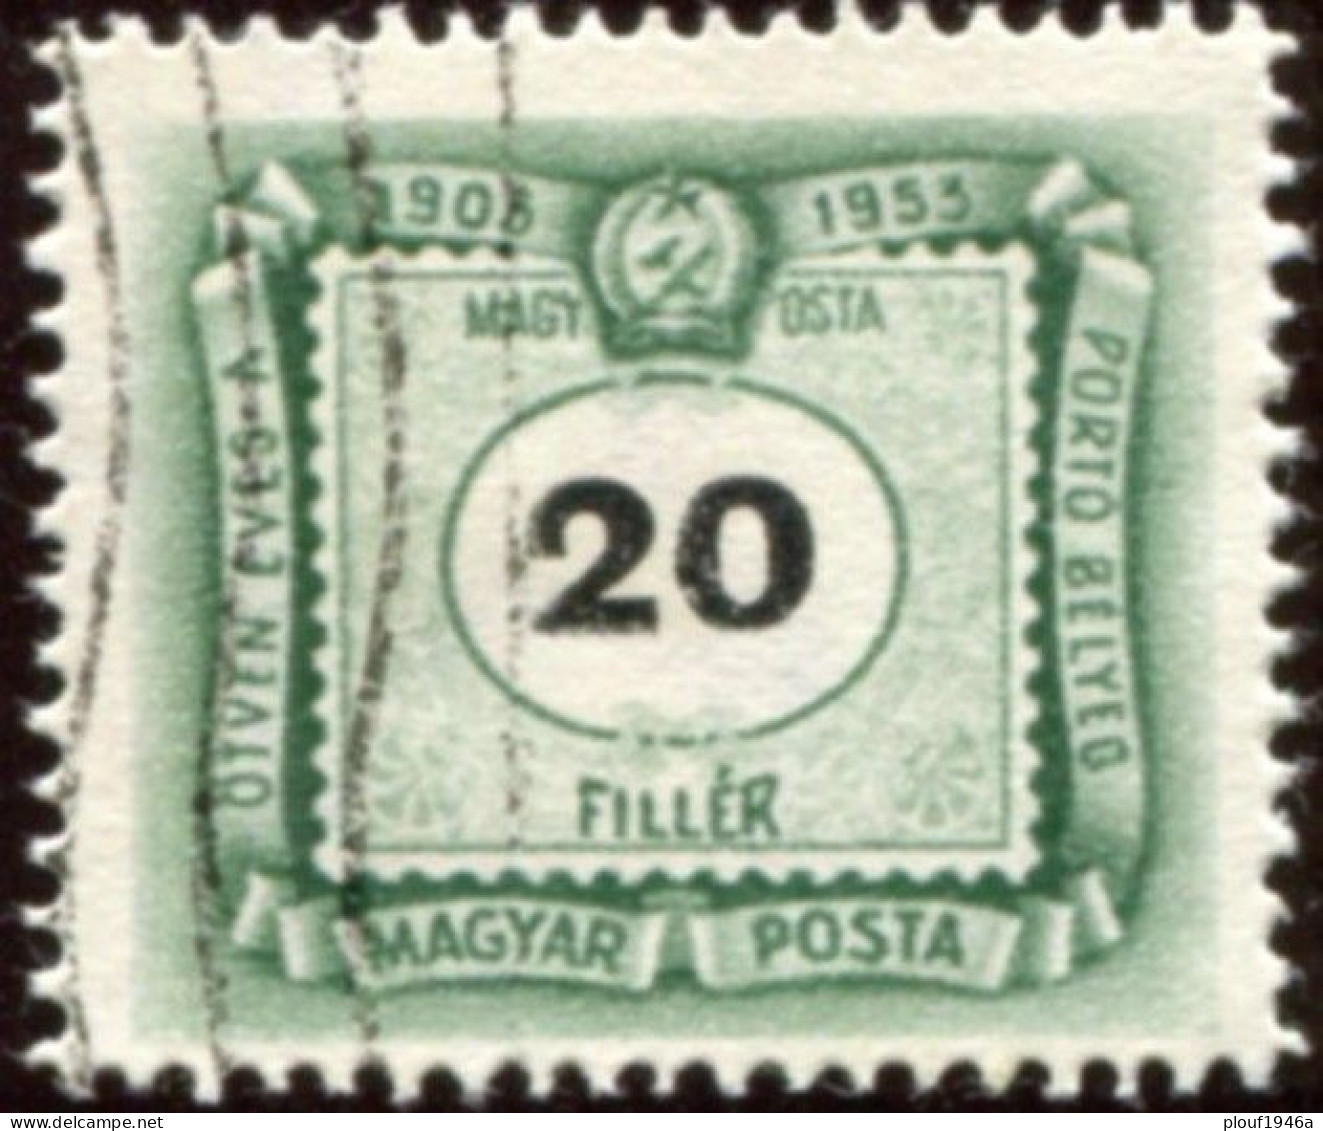 Pays : 226,4 (Hongrie : République Démocratique)    Philatelia Hungarica Catalog : 224 - Port Dû (Taxe)